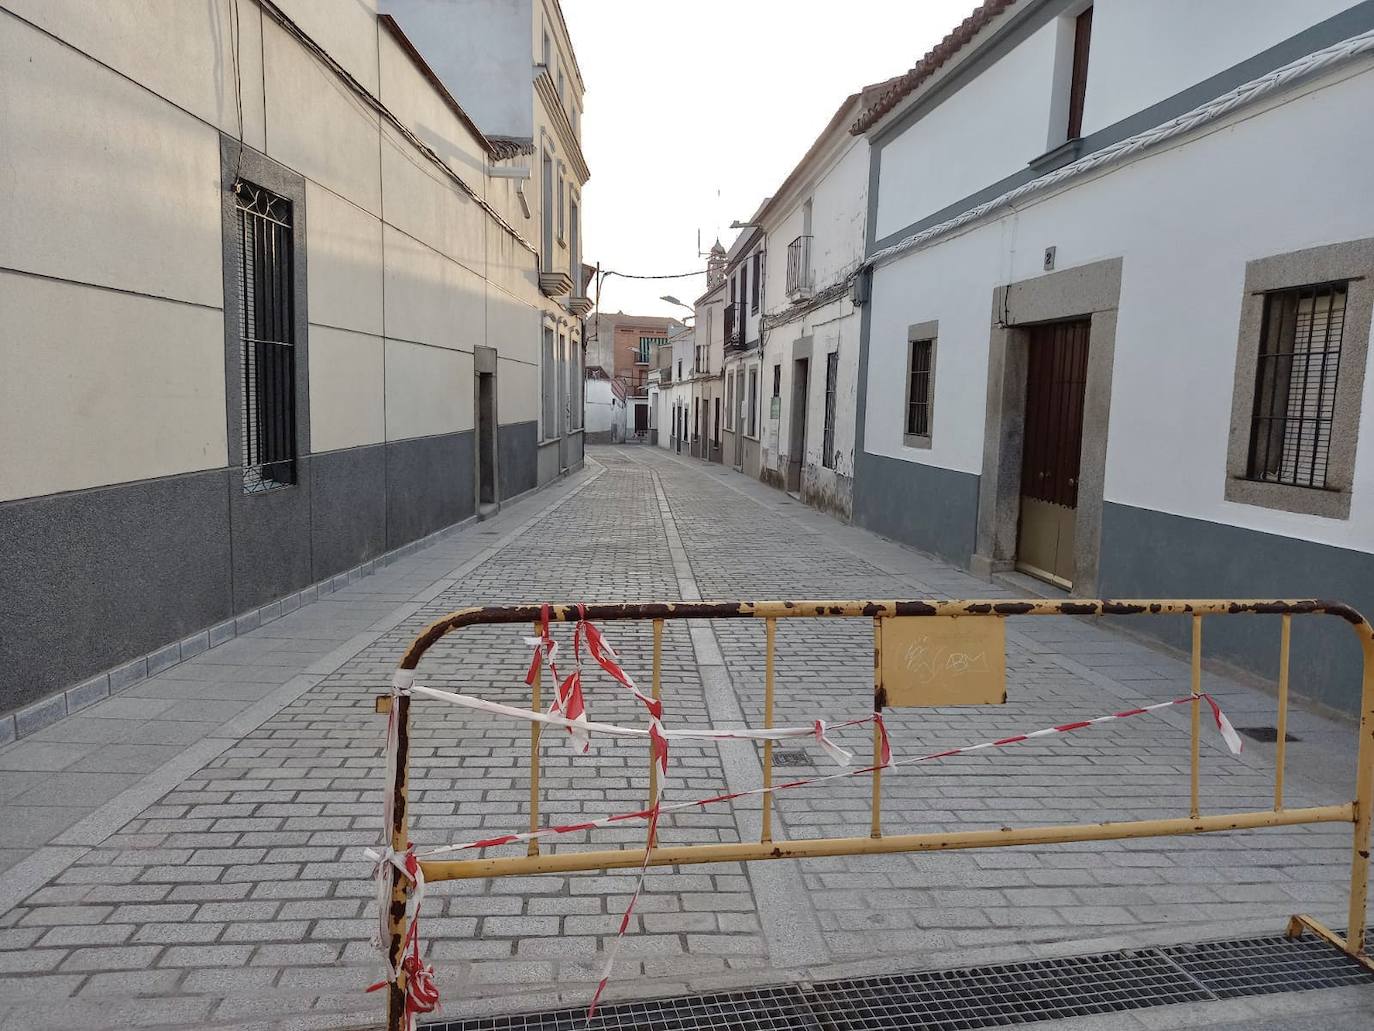 Acaban las obras de la calle Velázquez tras 4 meses de trabajo